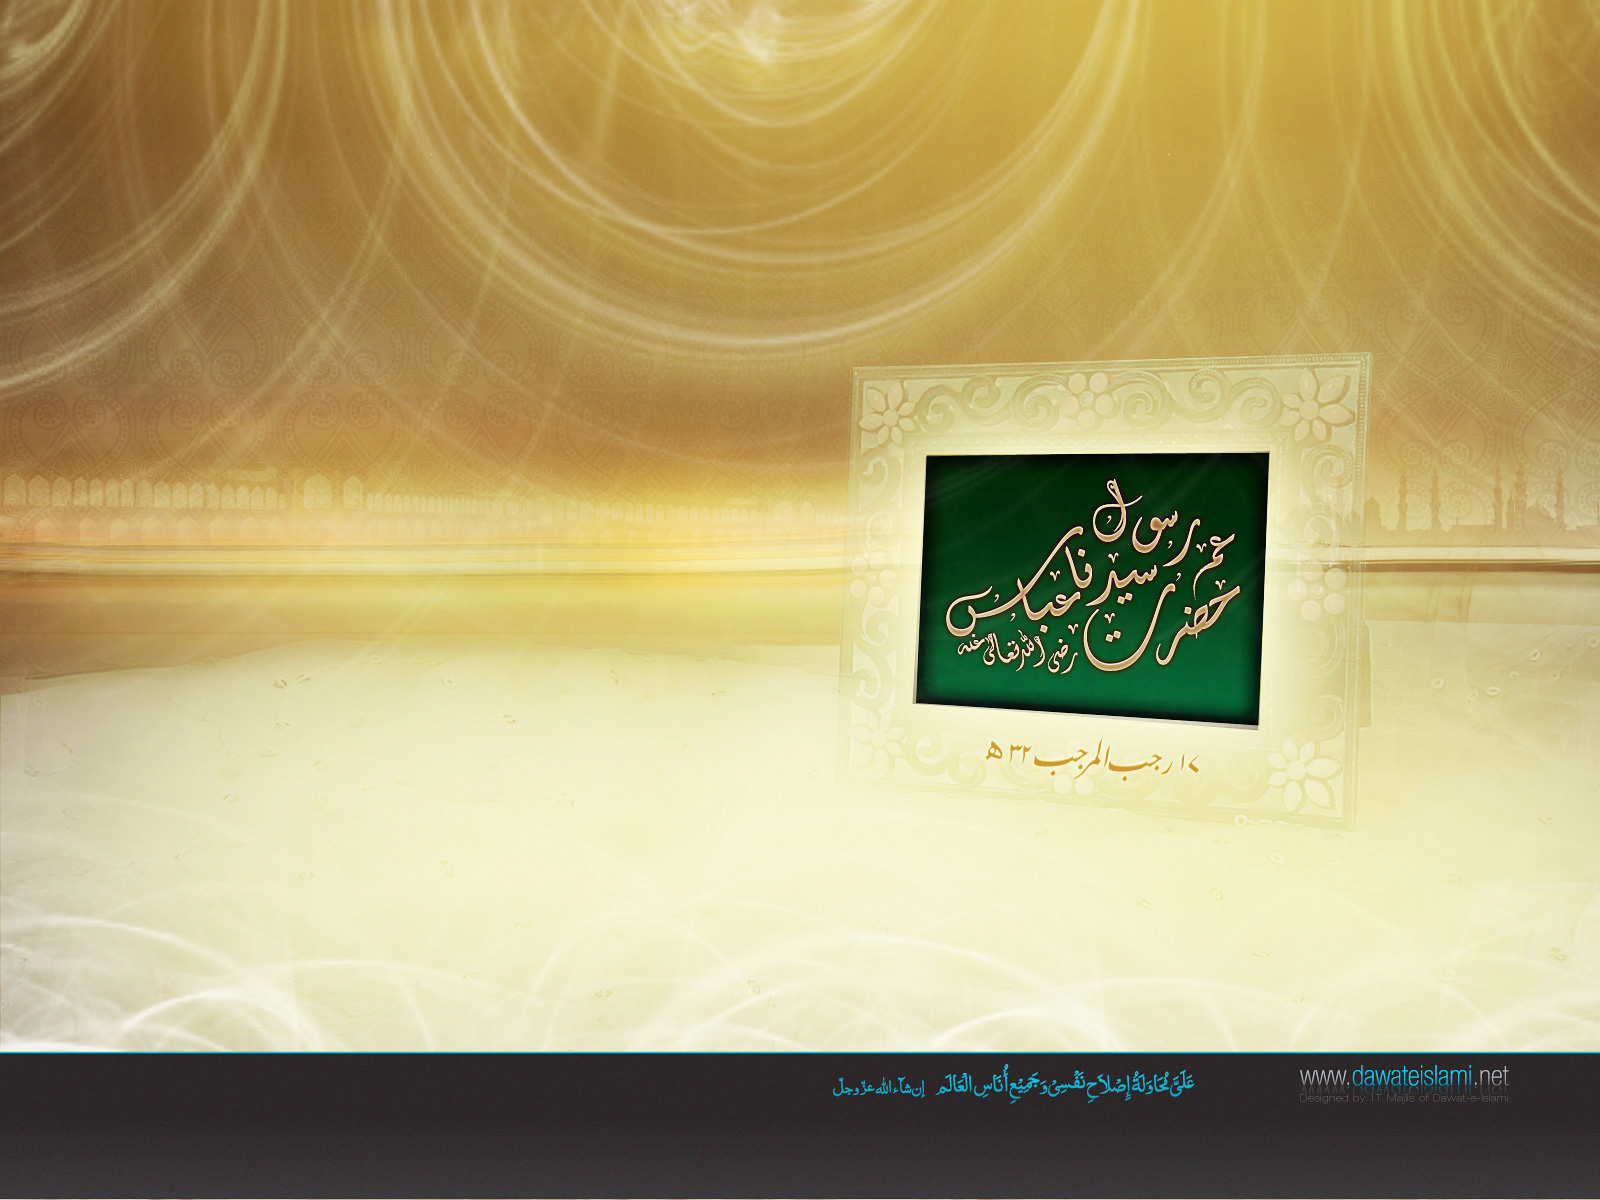 Rajab Wallpaper Islamic